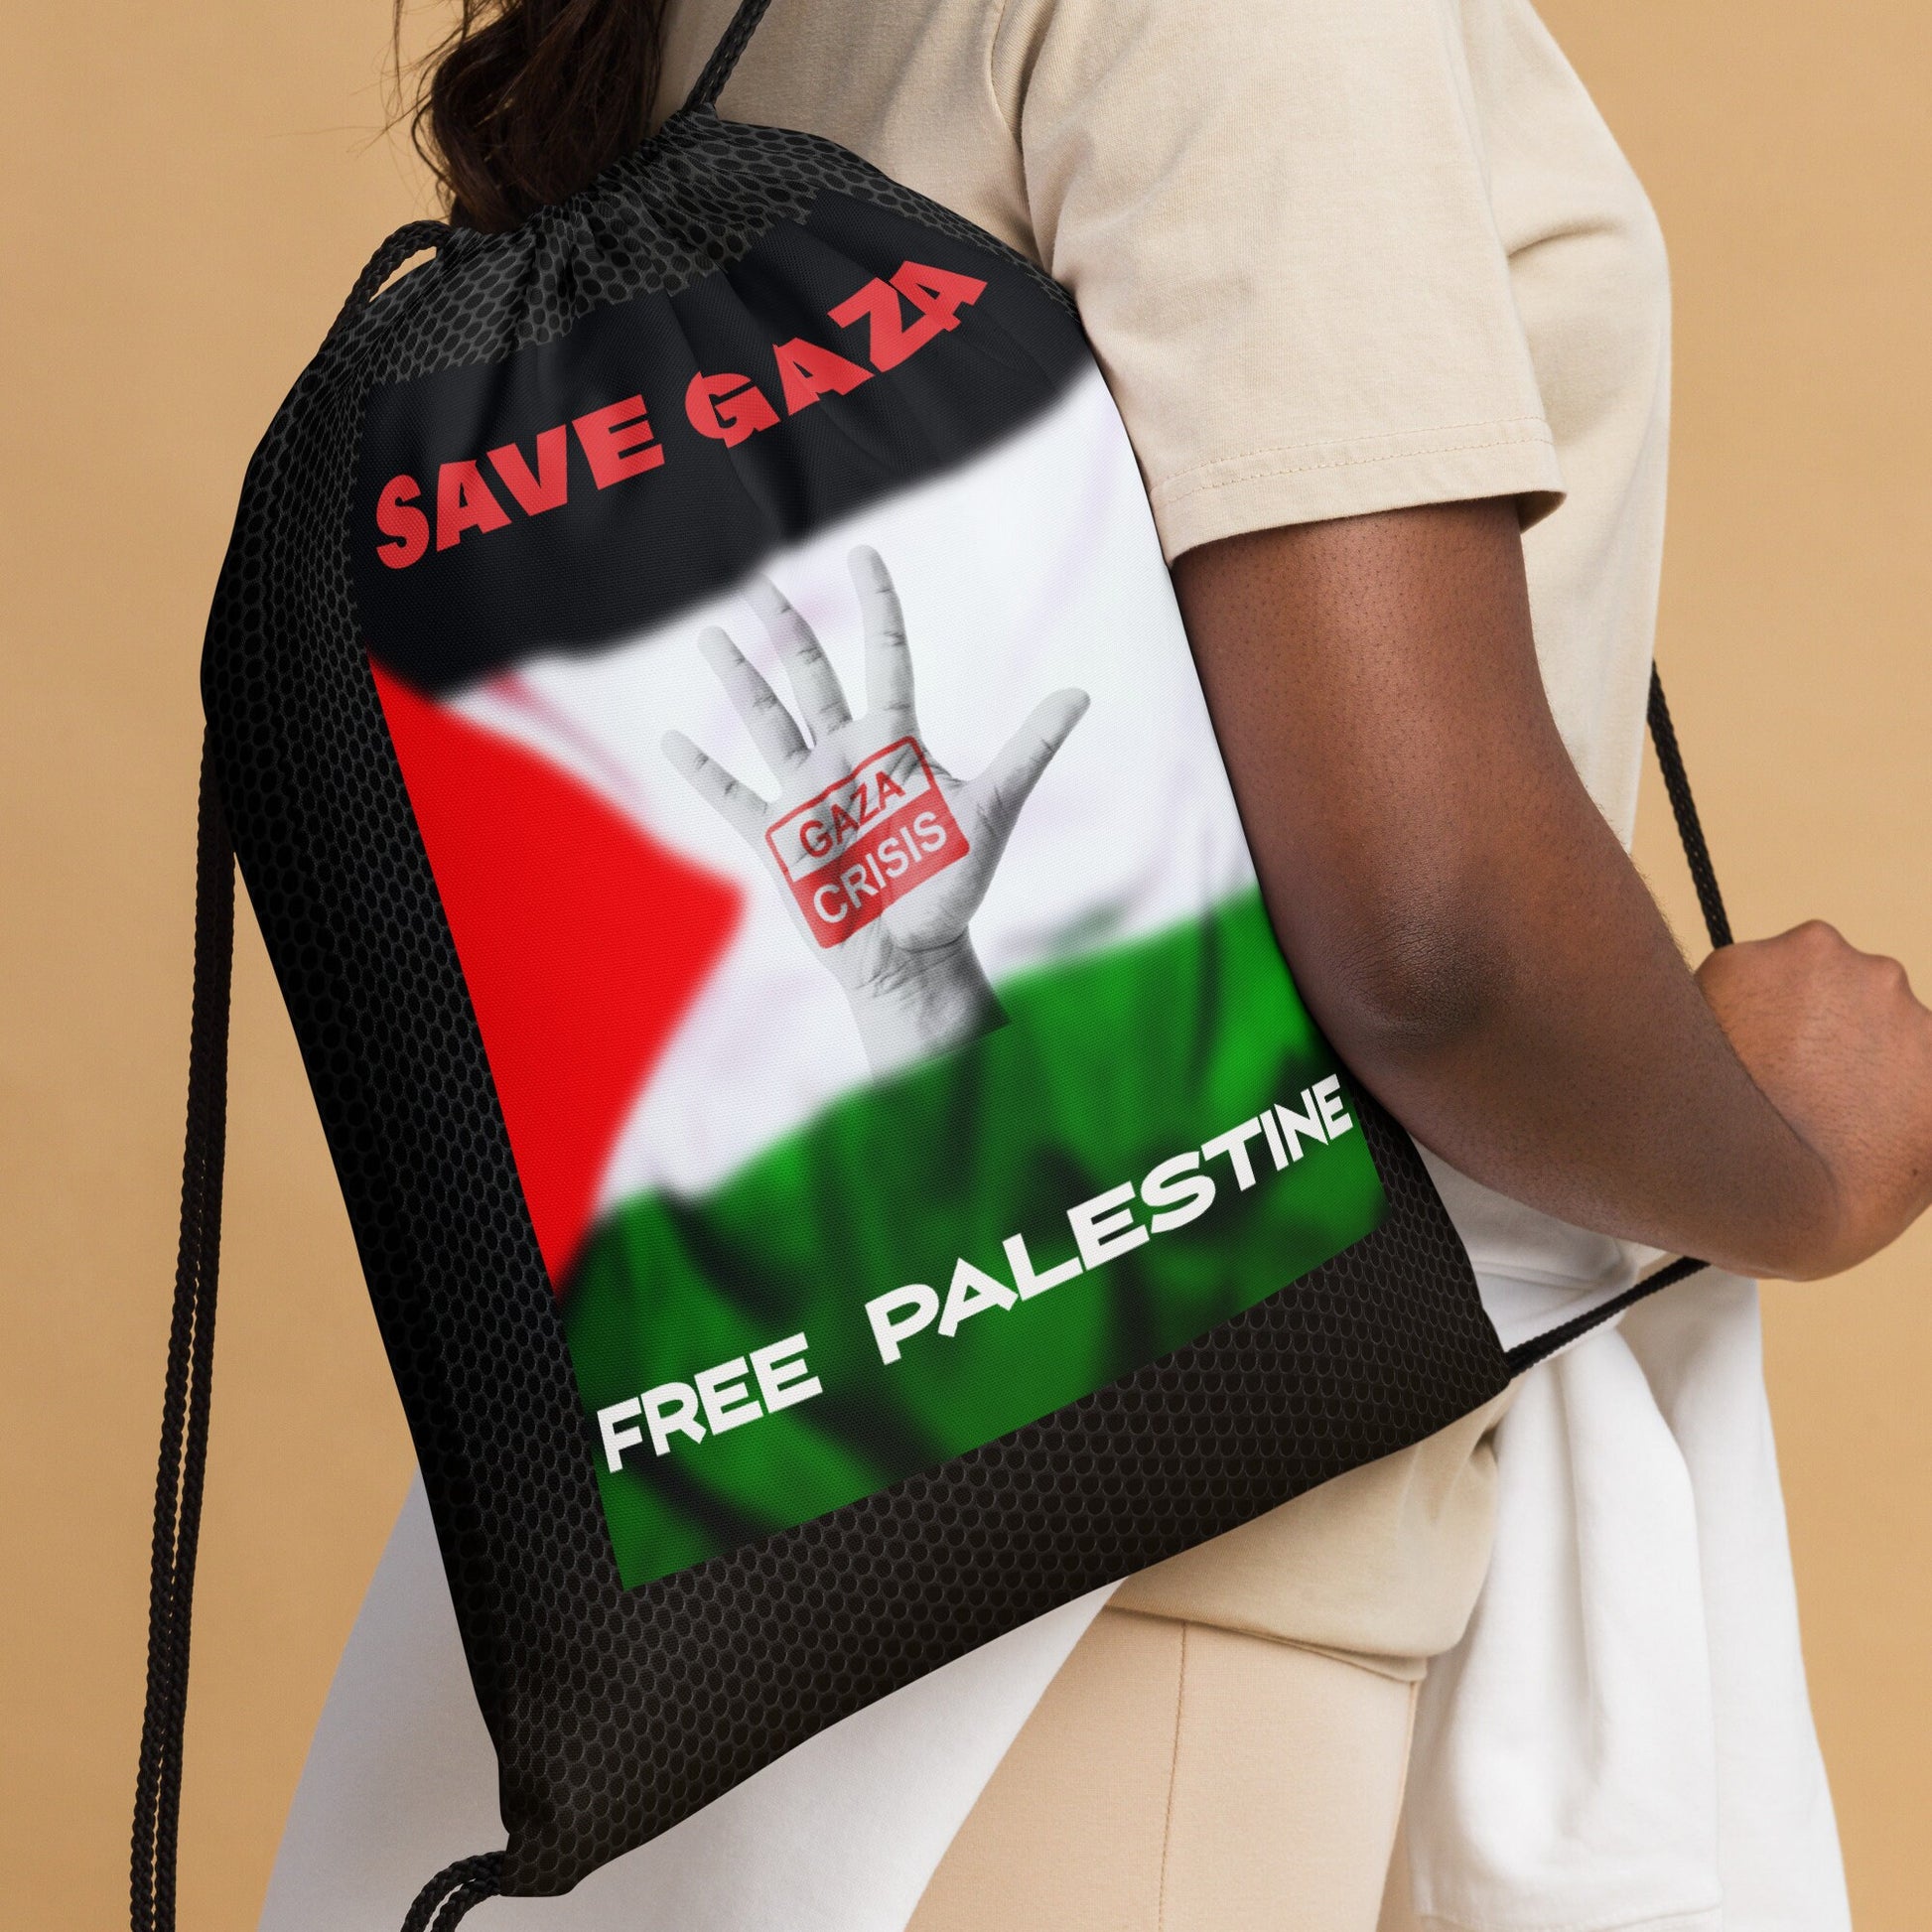 Free Palestine Drawstring bag, 15″ × 17″ Save Gaza Bag